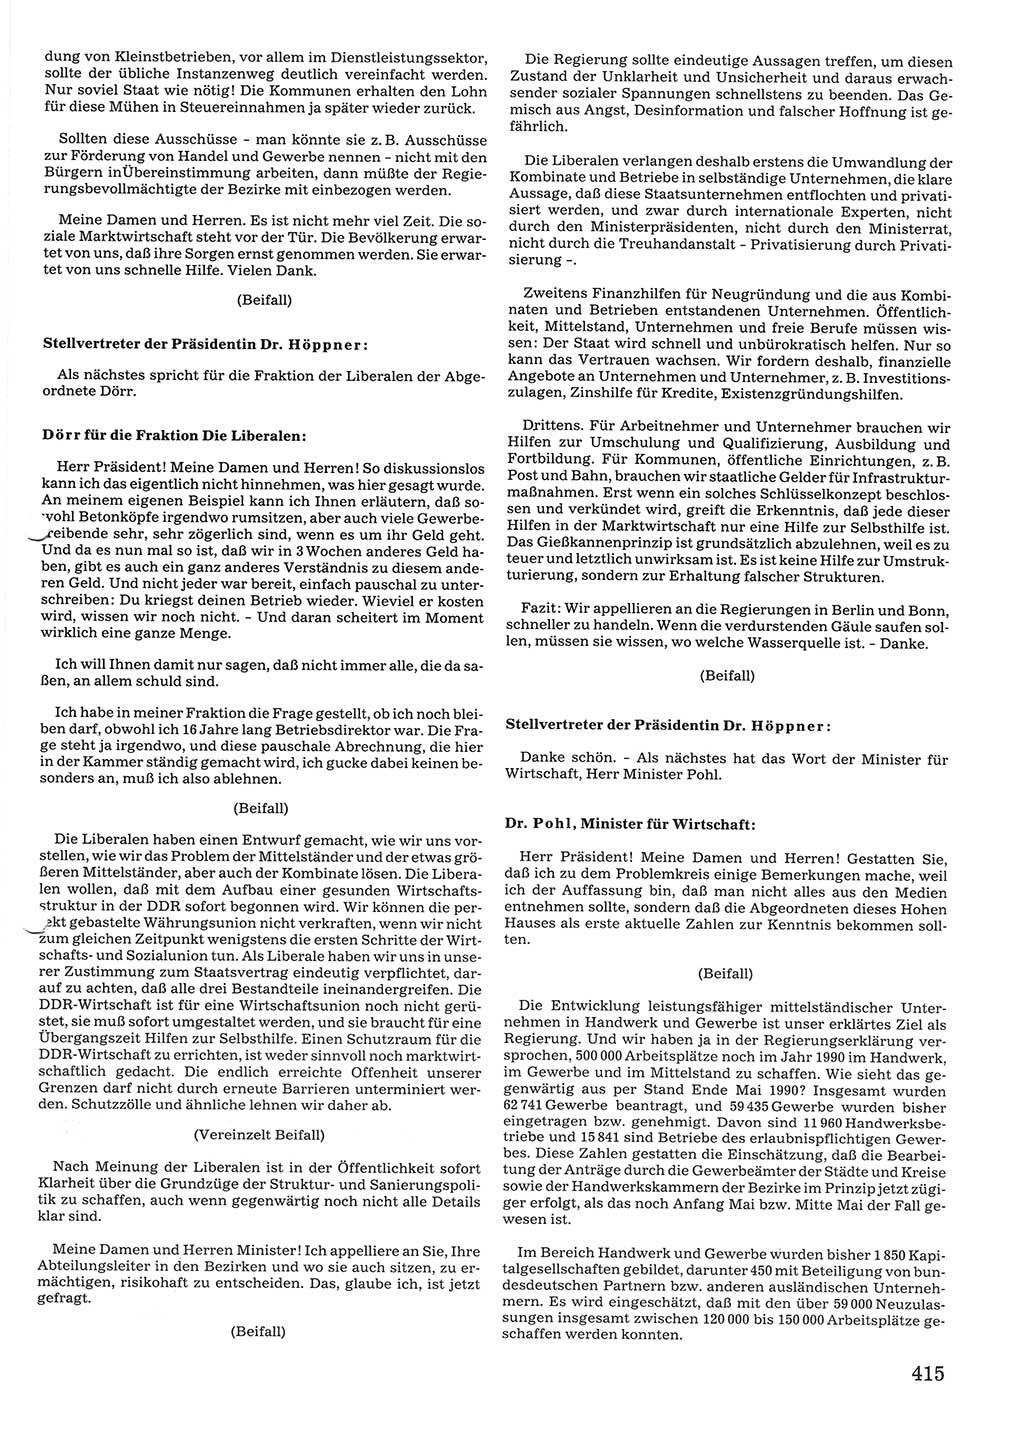 Tagungen der Volkskammer (VK) der Deutschen Demokratischen Republik (DDR), 10. Wahlperiode 1990, Seite 415 (VK. DDR 10. WP. 1990, Prot. Tg. 1-38, 5.4.-2.10.1990, S. 415)